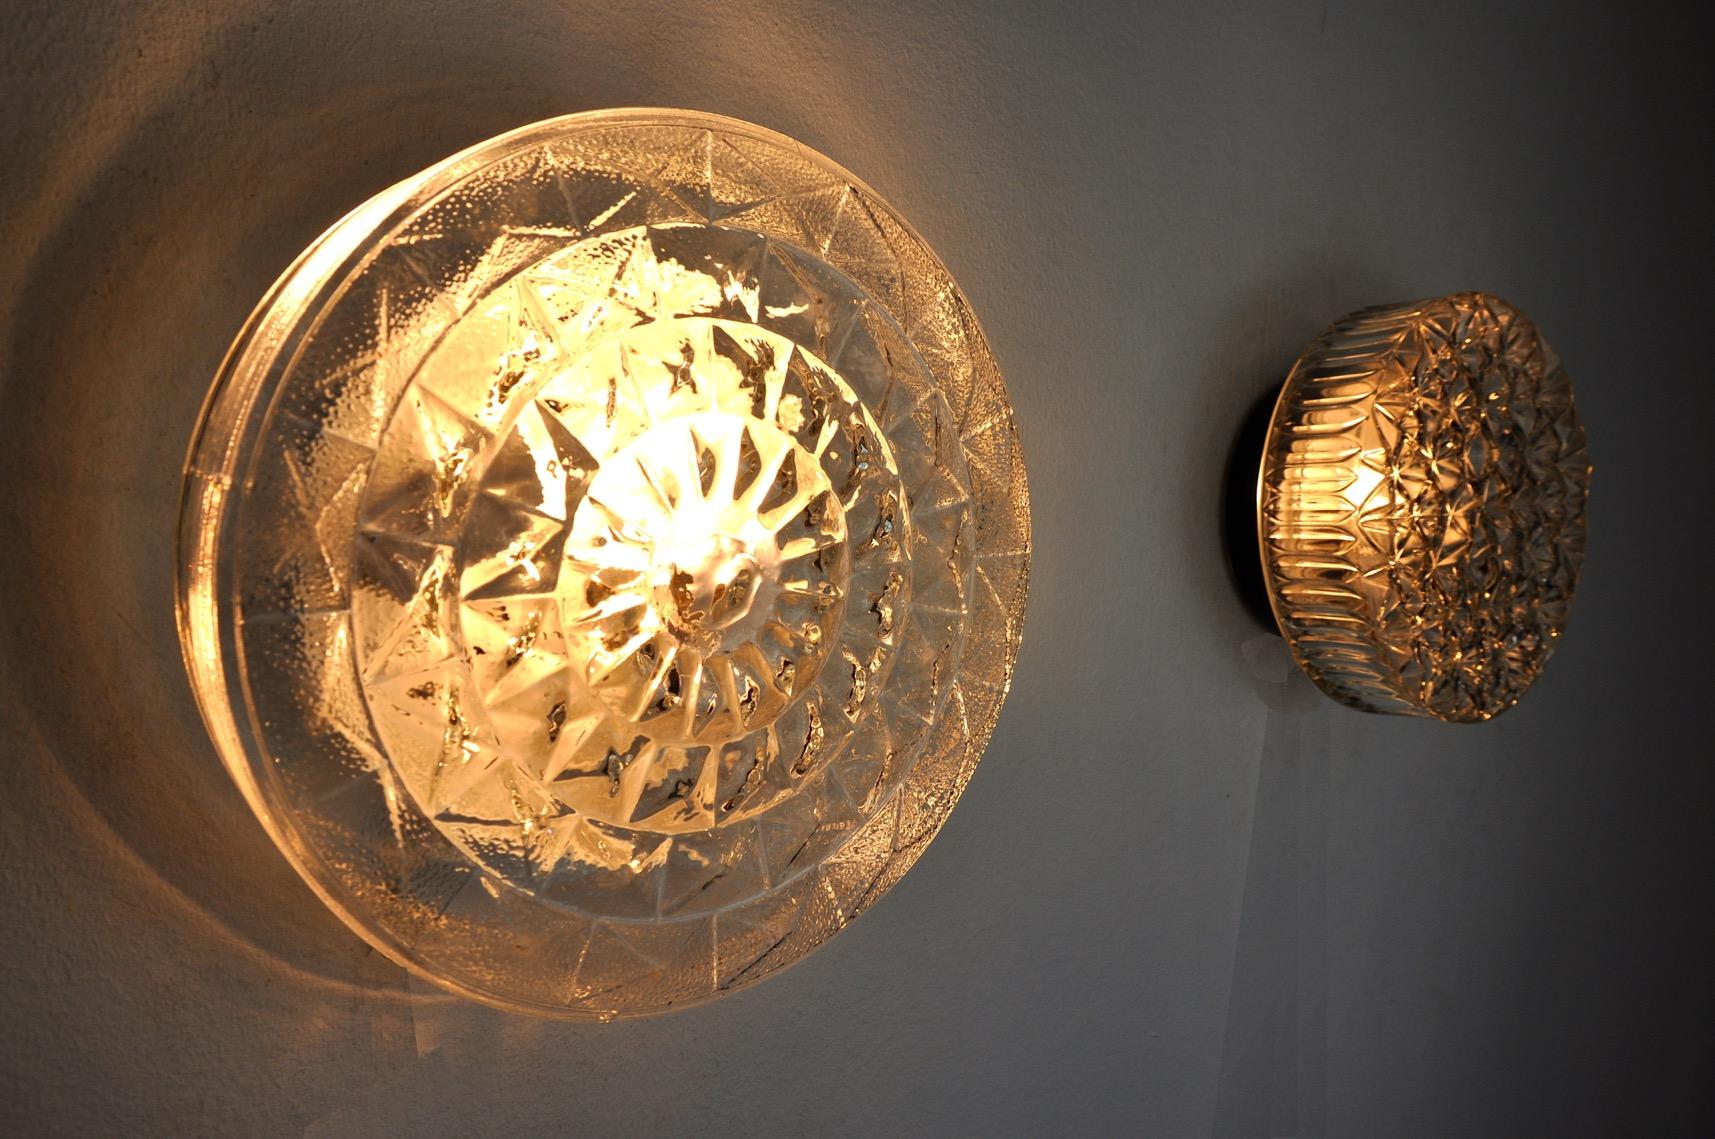 Sehr schönes Duo von Wandlampen aus Glas, entworfen und hergestellt von Peris Andreu in Spanien in den 1970er Jahren.

Die beiden Wandleuchter bestehen aus einem geschliffenen Kristall und einem unterschiedlichen Durchmesser.

Einzigartiges Objekt,